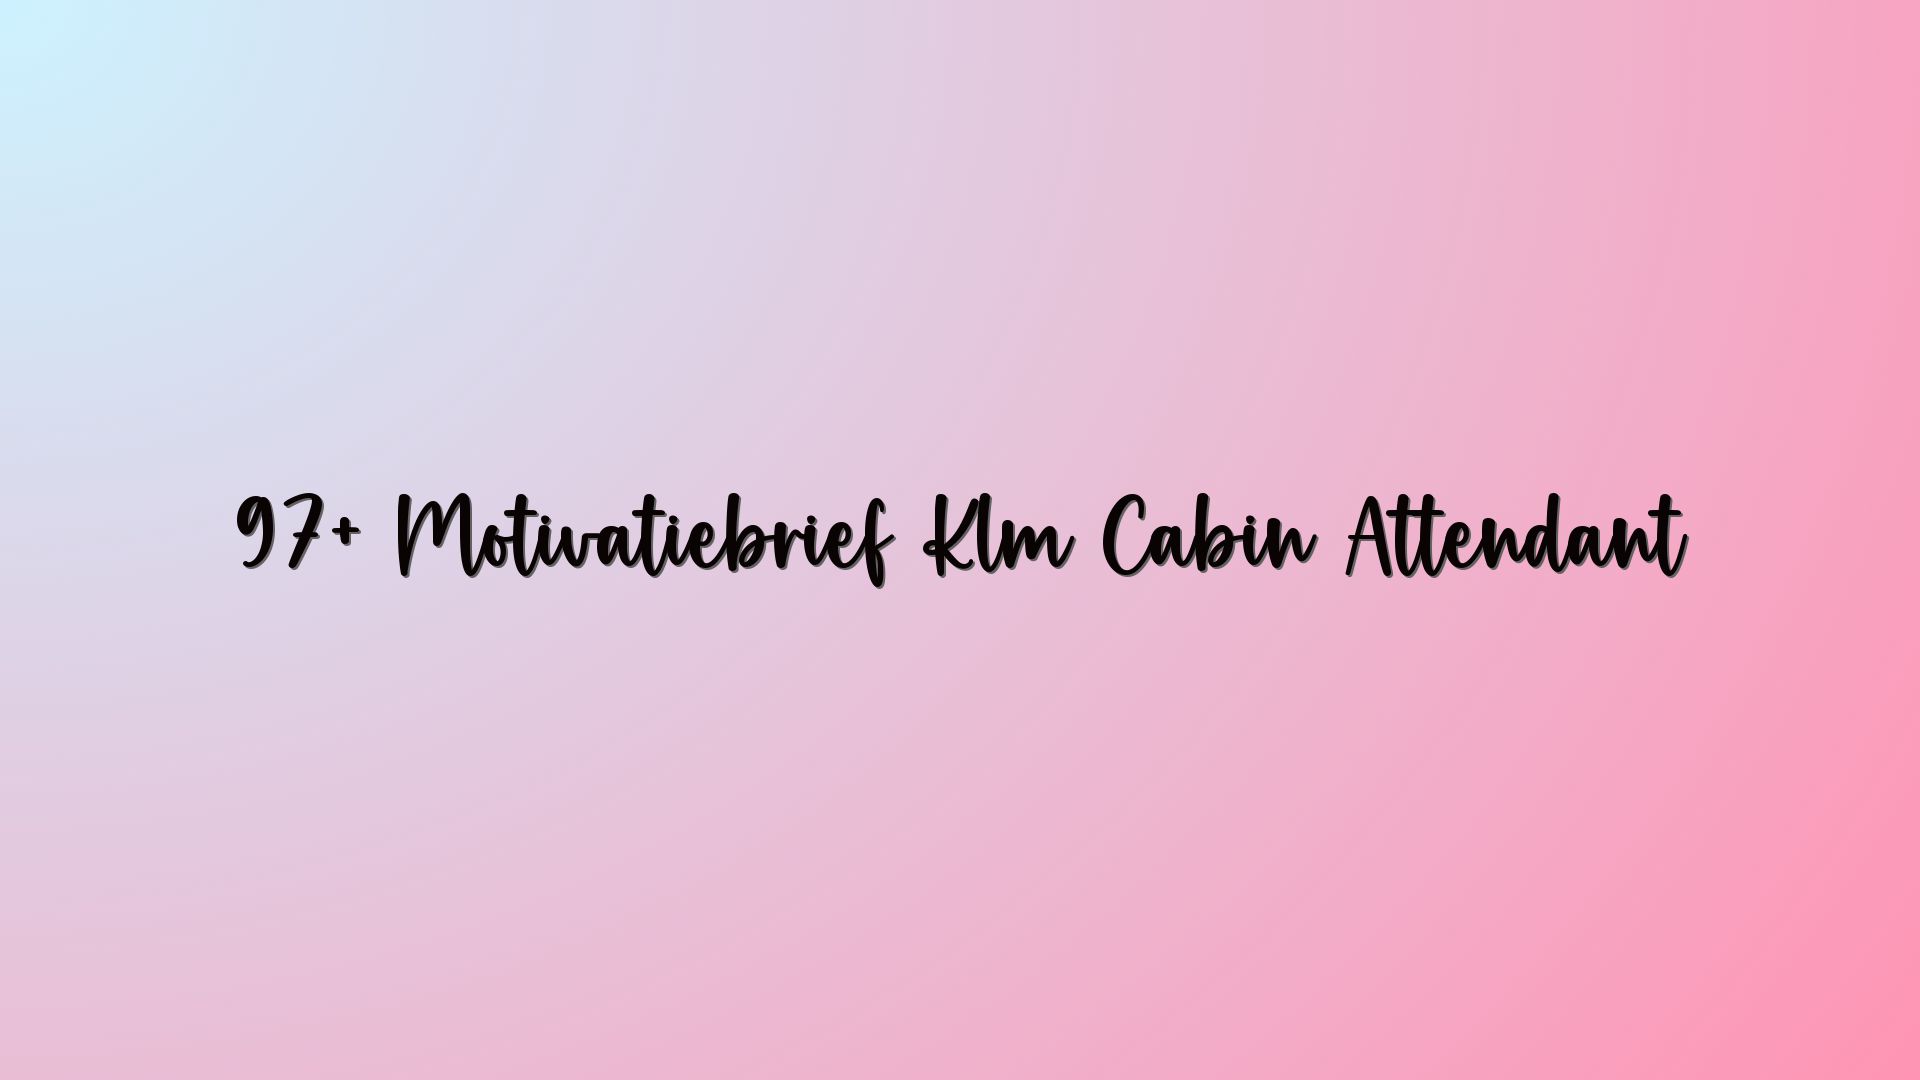 97+ Motivatiebrief Klm Cabin Attendant